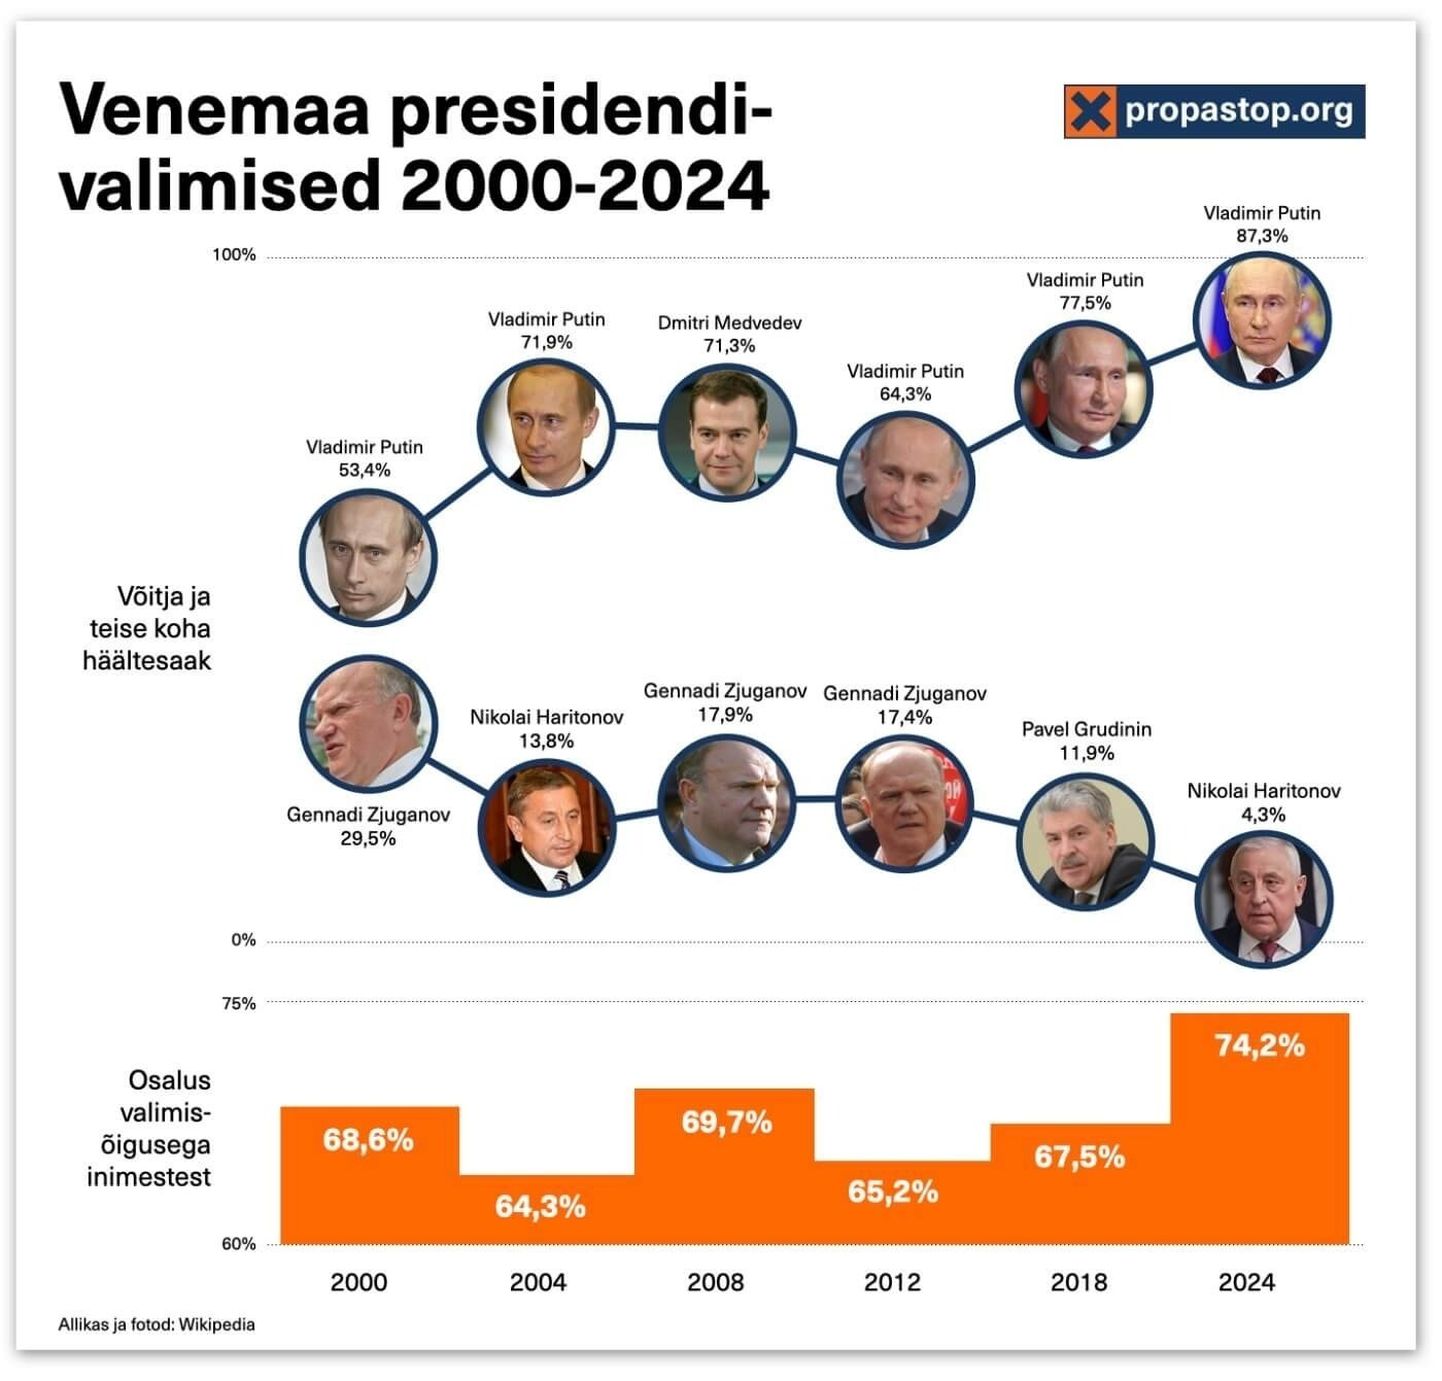 Venemaa presidendivalimised 2000-2024